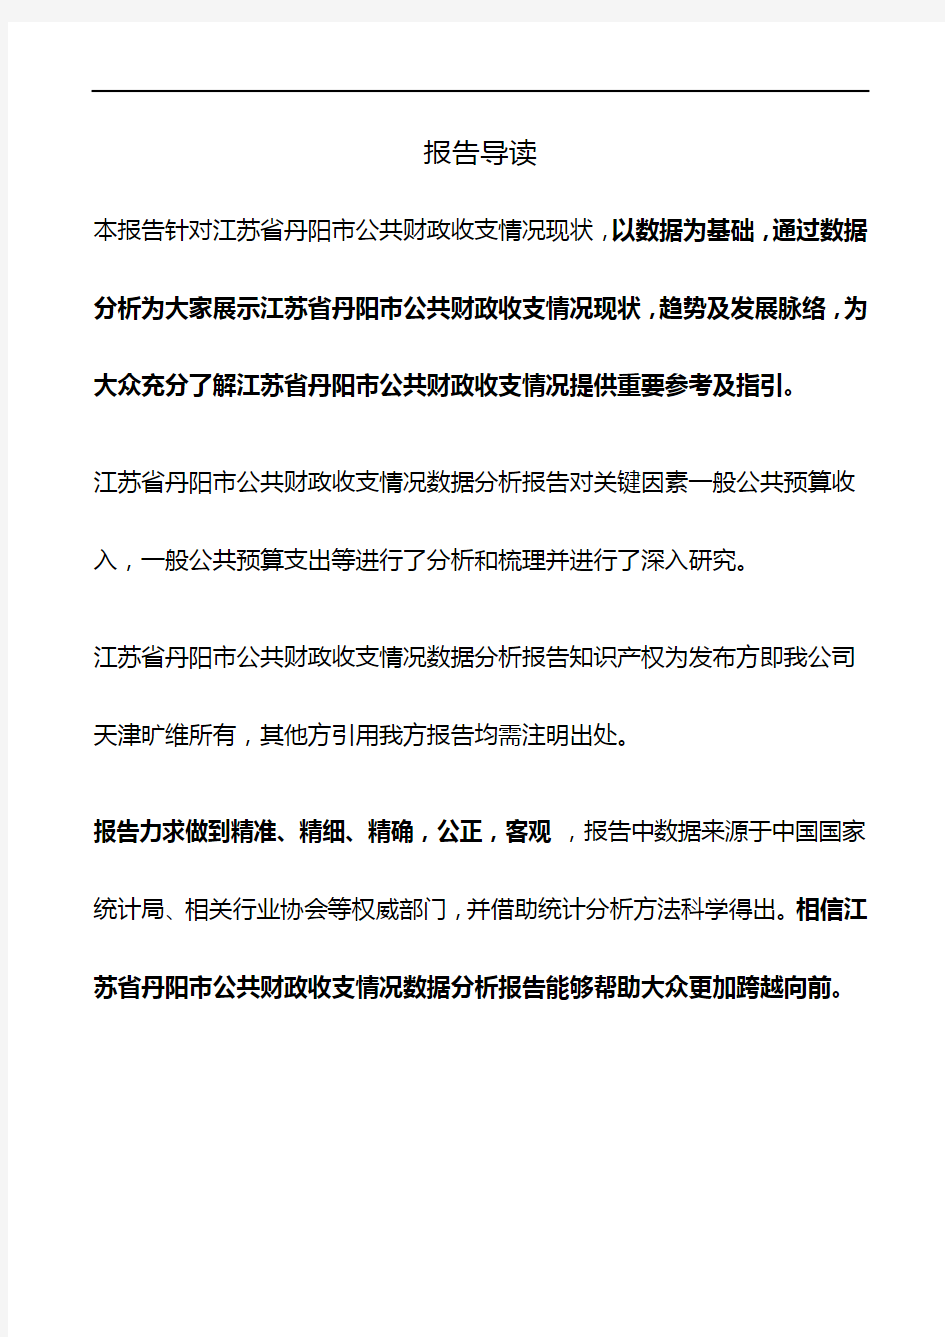 江苏省丹阳市公共财政收支情况3年数据分析报告2019版